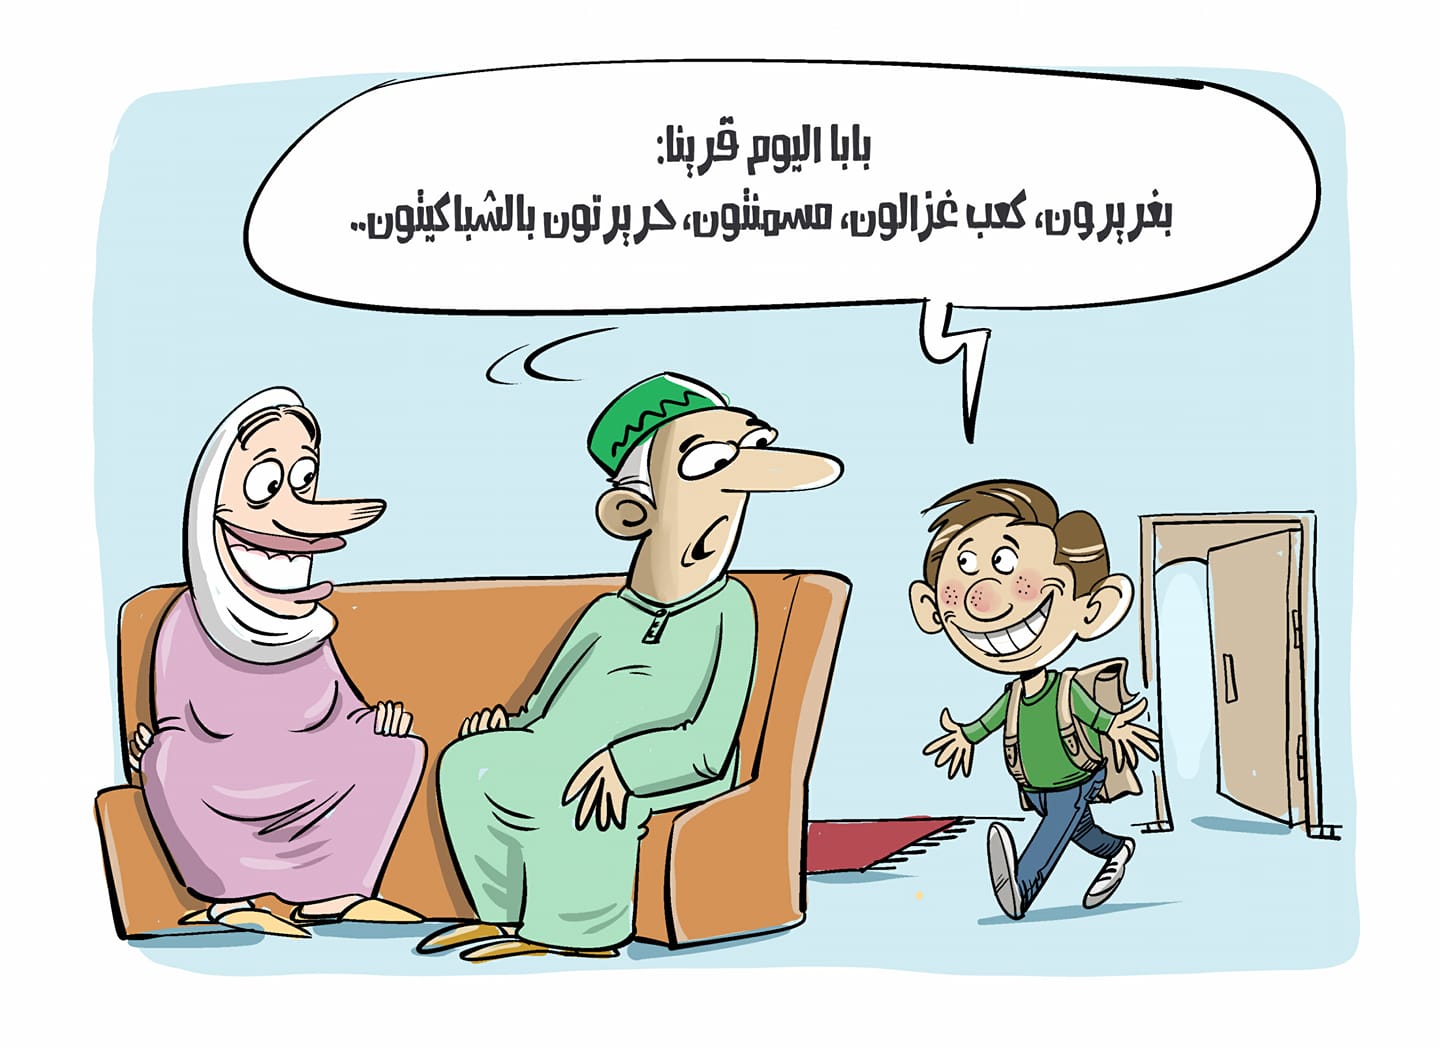 كاريكاتير بريشة الفنان عبد الغني الدهدوه منشور في صحيفة المساء يسخر فيه من استعمال الدارجة في المقررات المدرسية